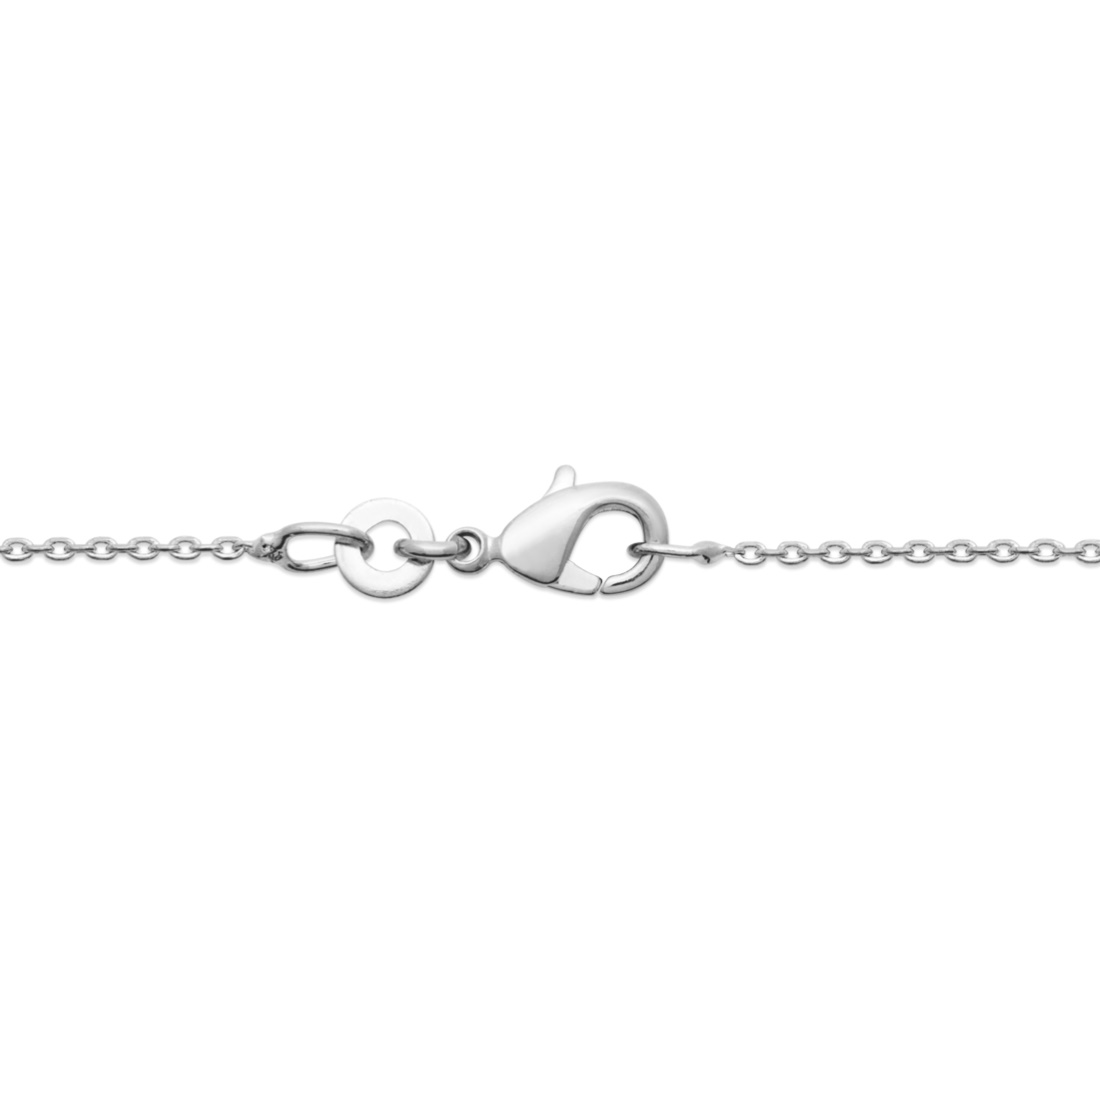 Collier composé d'une chaîne et un pendentif en forme de chaîne grosse maille en argent 925/000 rhodié.<br/>Fermoir mousqueton avec anneaux de rappel à 40, 42 et 45 cm.  Adolescent Adulte Femme Fille Indémodable 